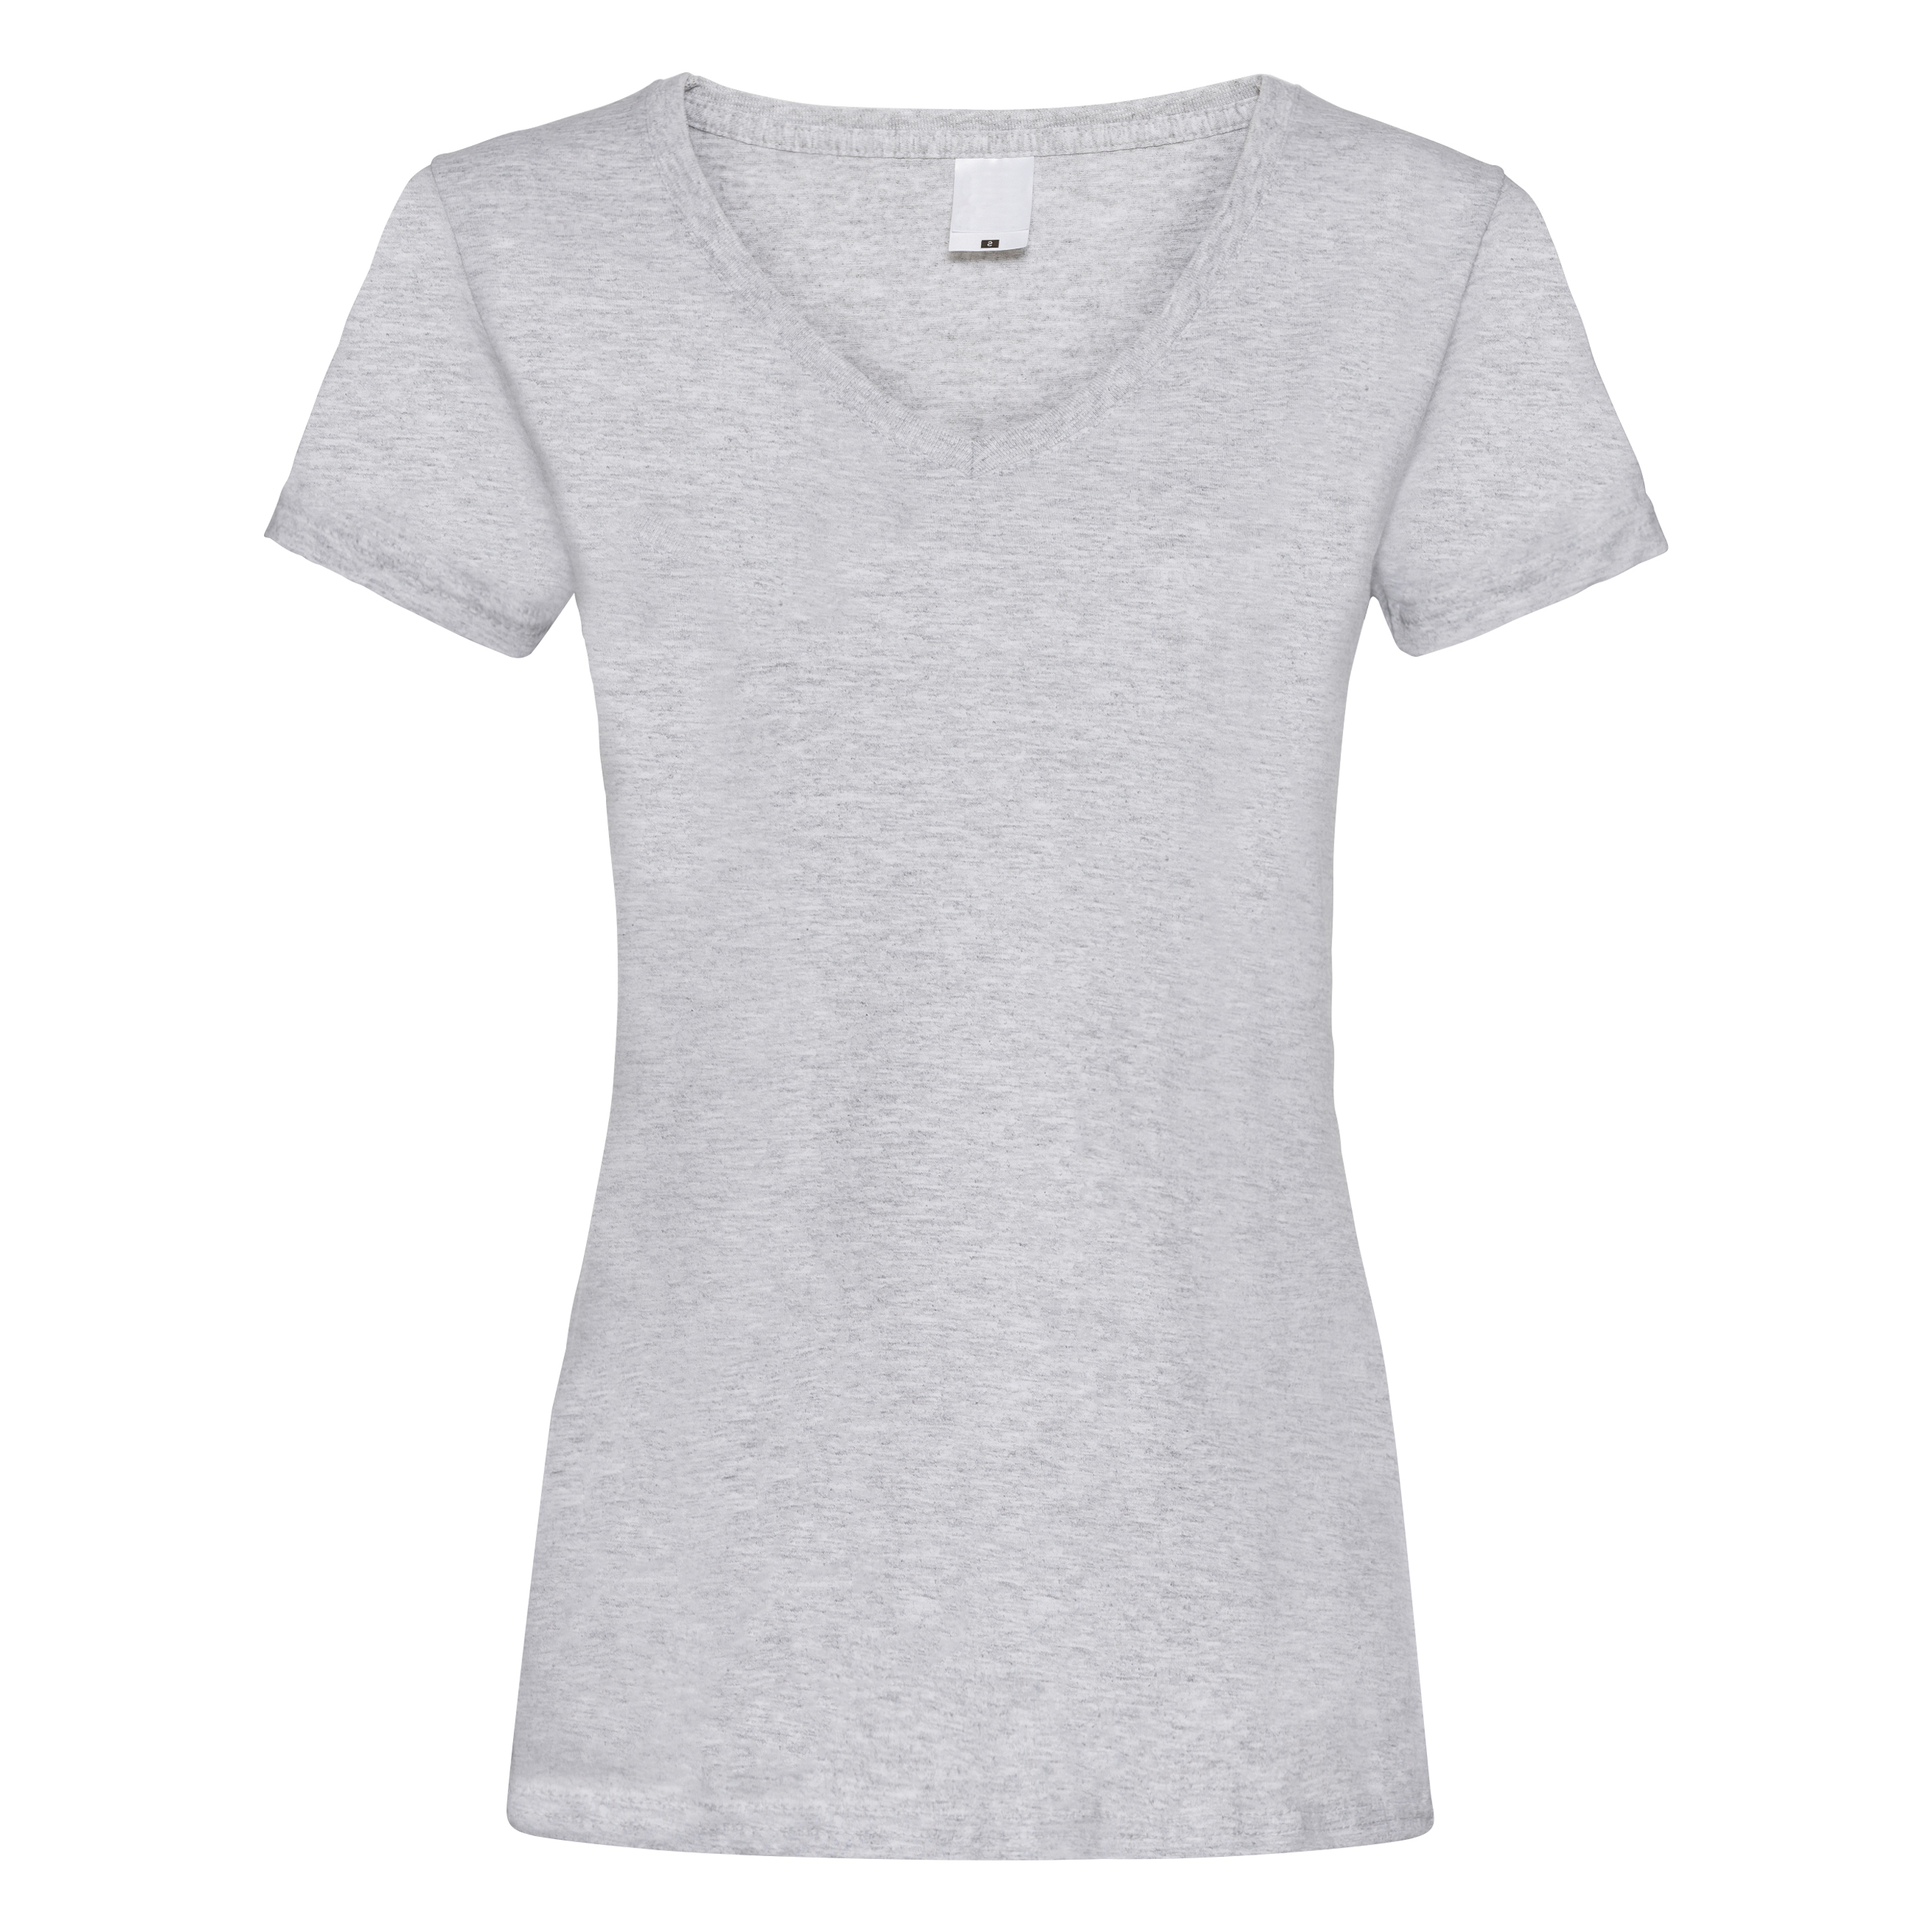 Camiseta Entallada De Manga Corta Y Cuello En V Universal Textiles - gris - 